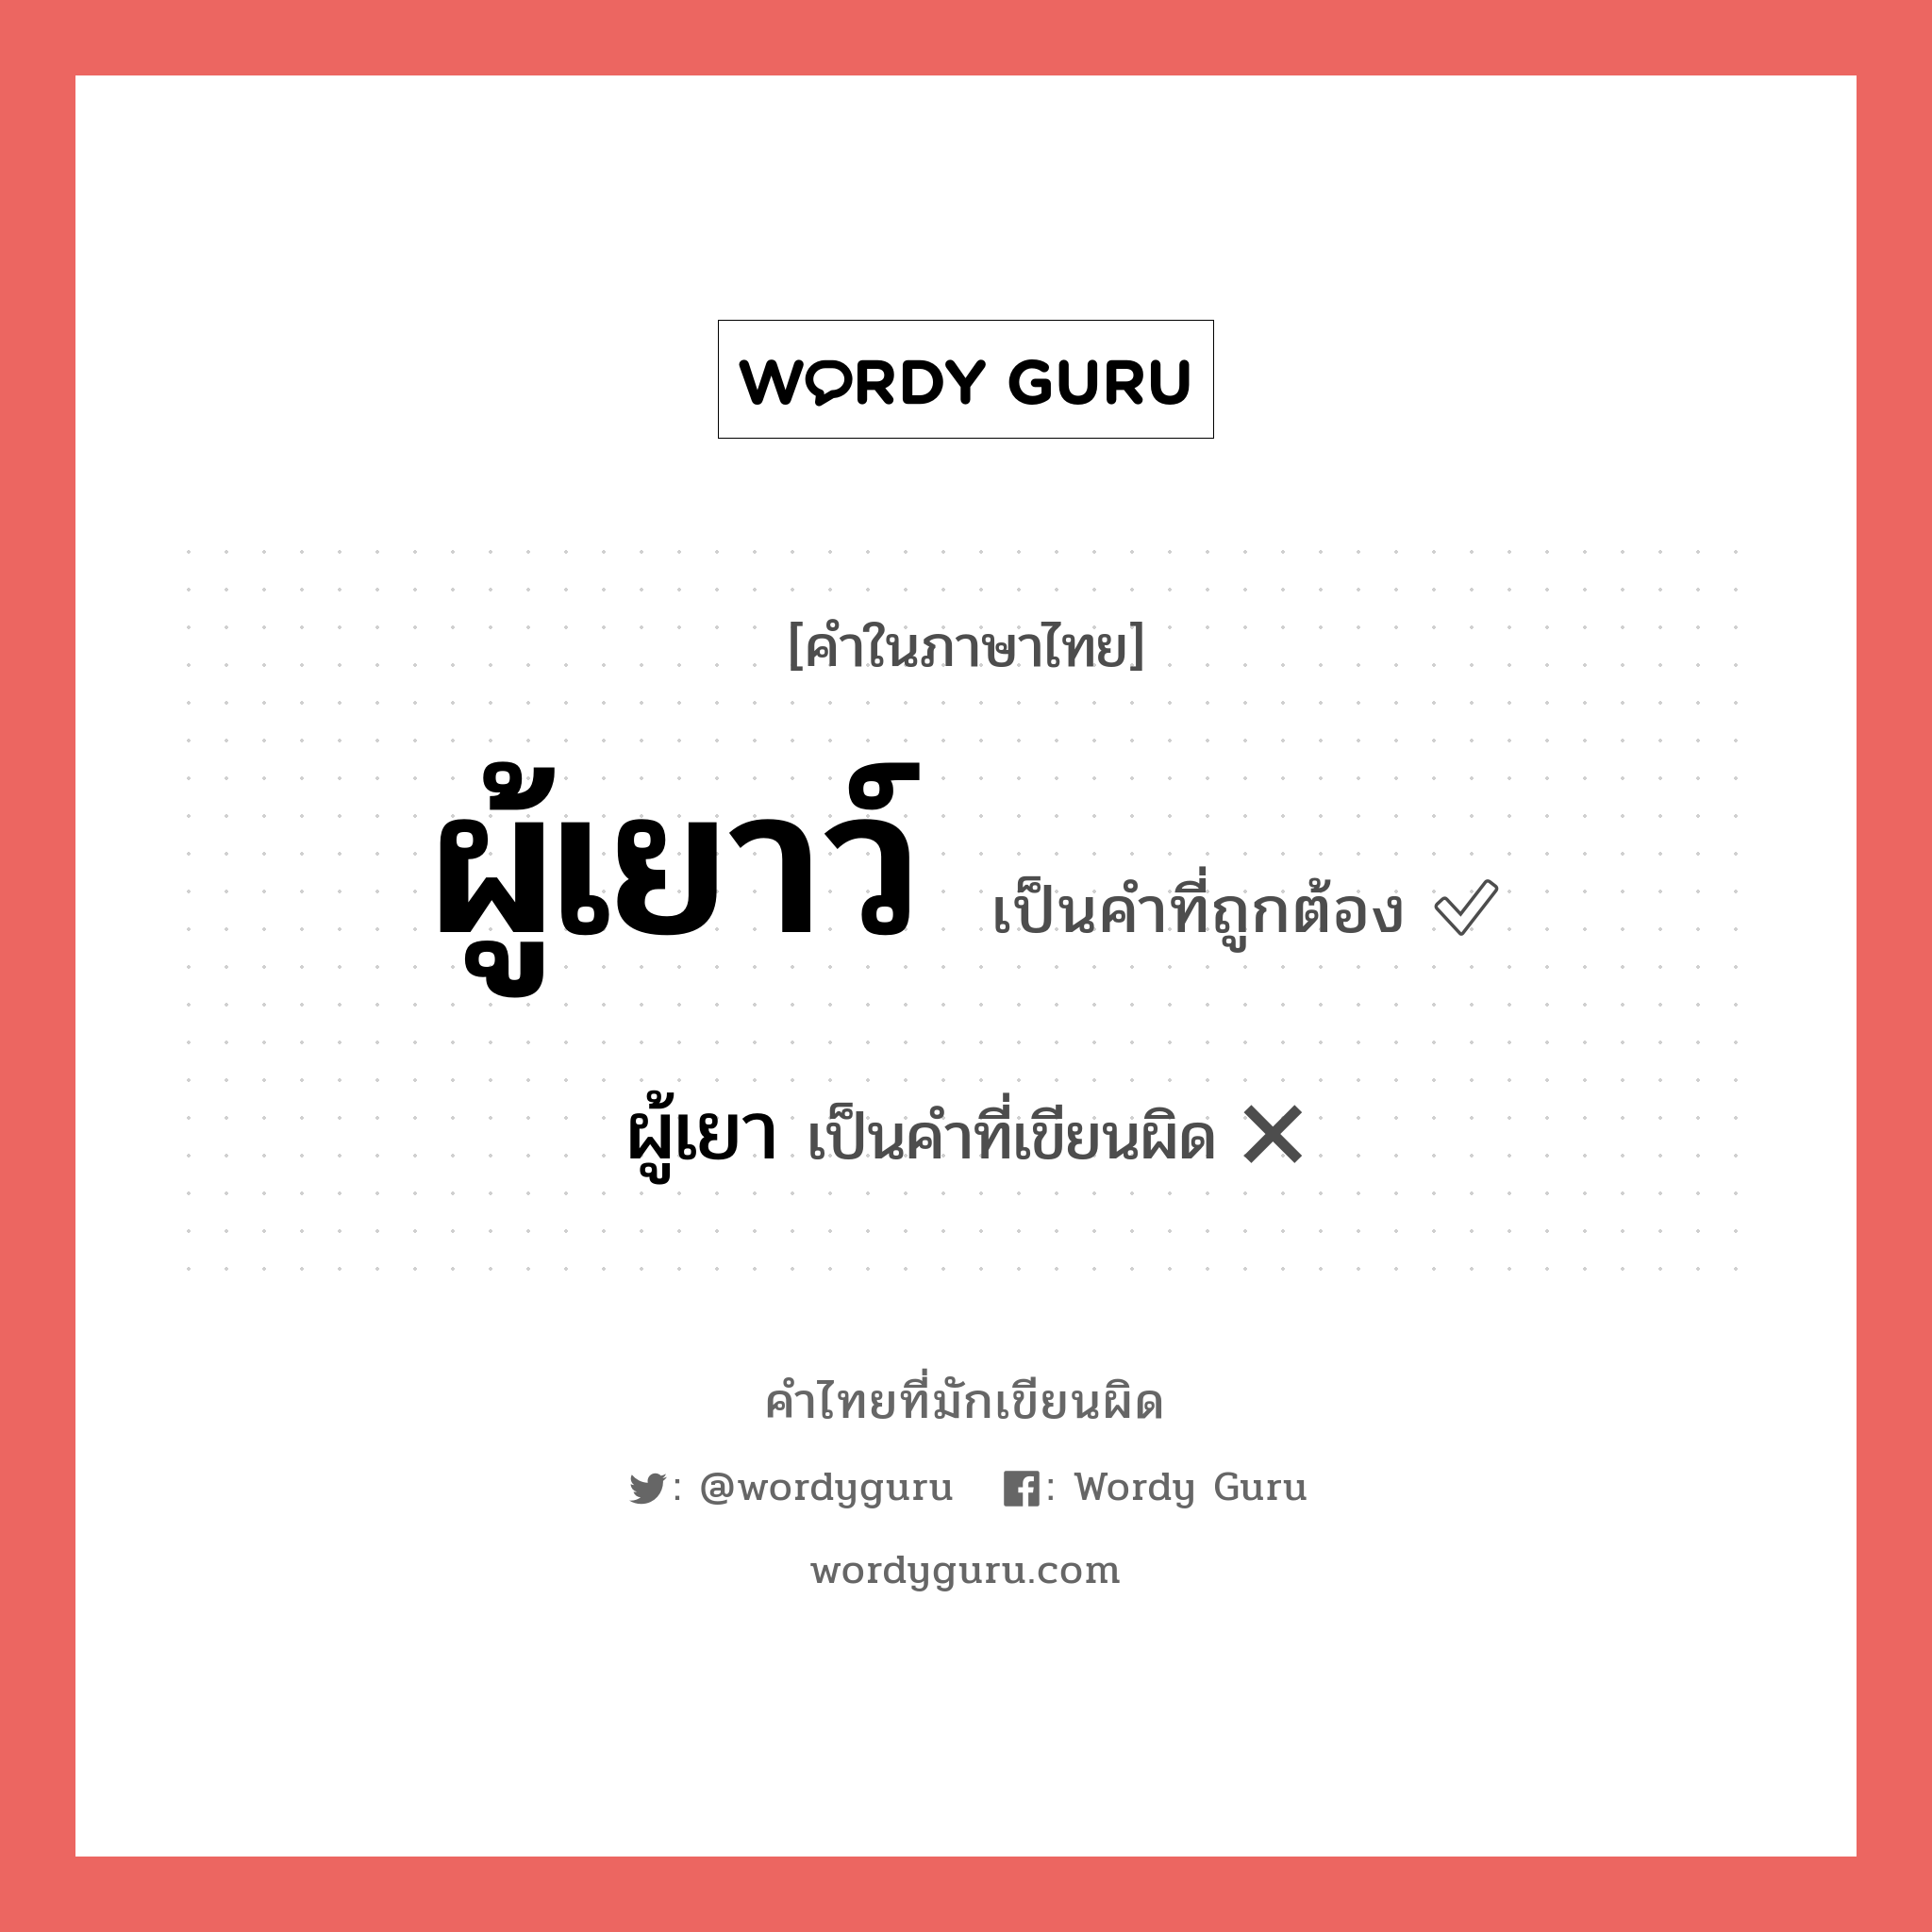 ผู้เยา หรือ ผู้เยาว์ คำไหนเขียนถูก?, คำในภาษาไทยที่มักเขียนผิด ผู้เยา คำที่ผิด ❌ ผู้เยาว์